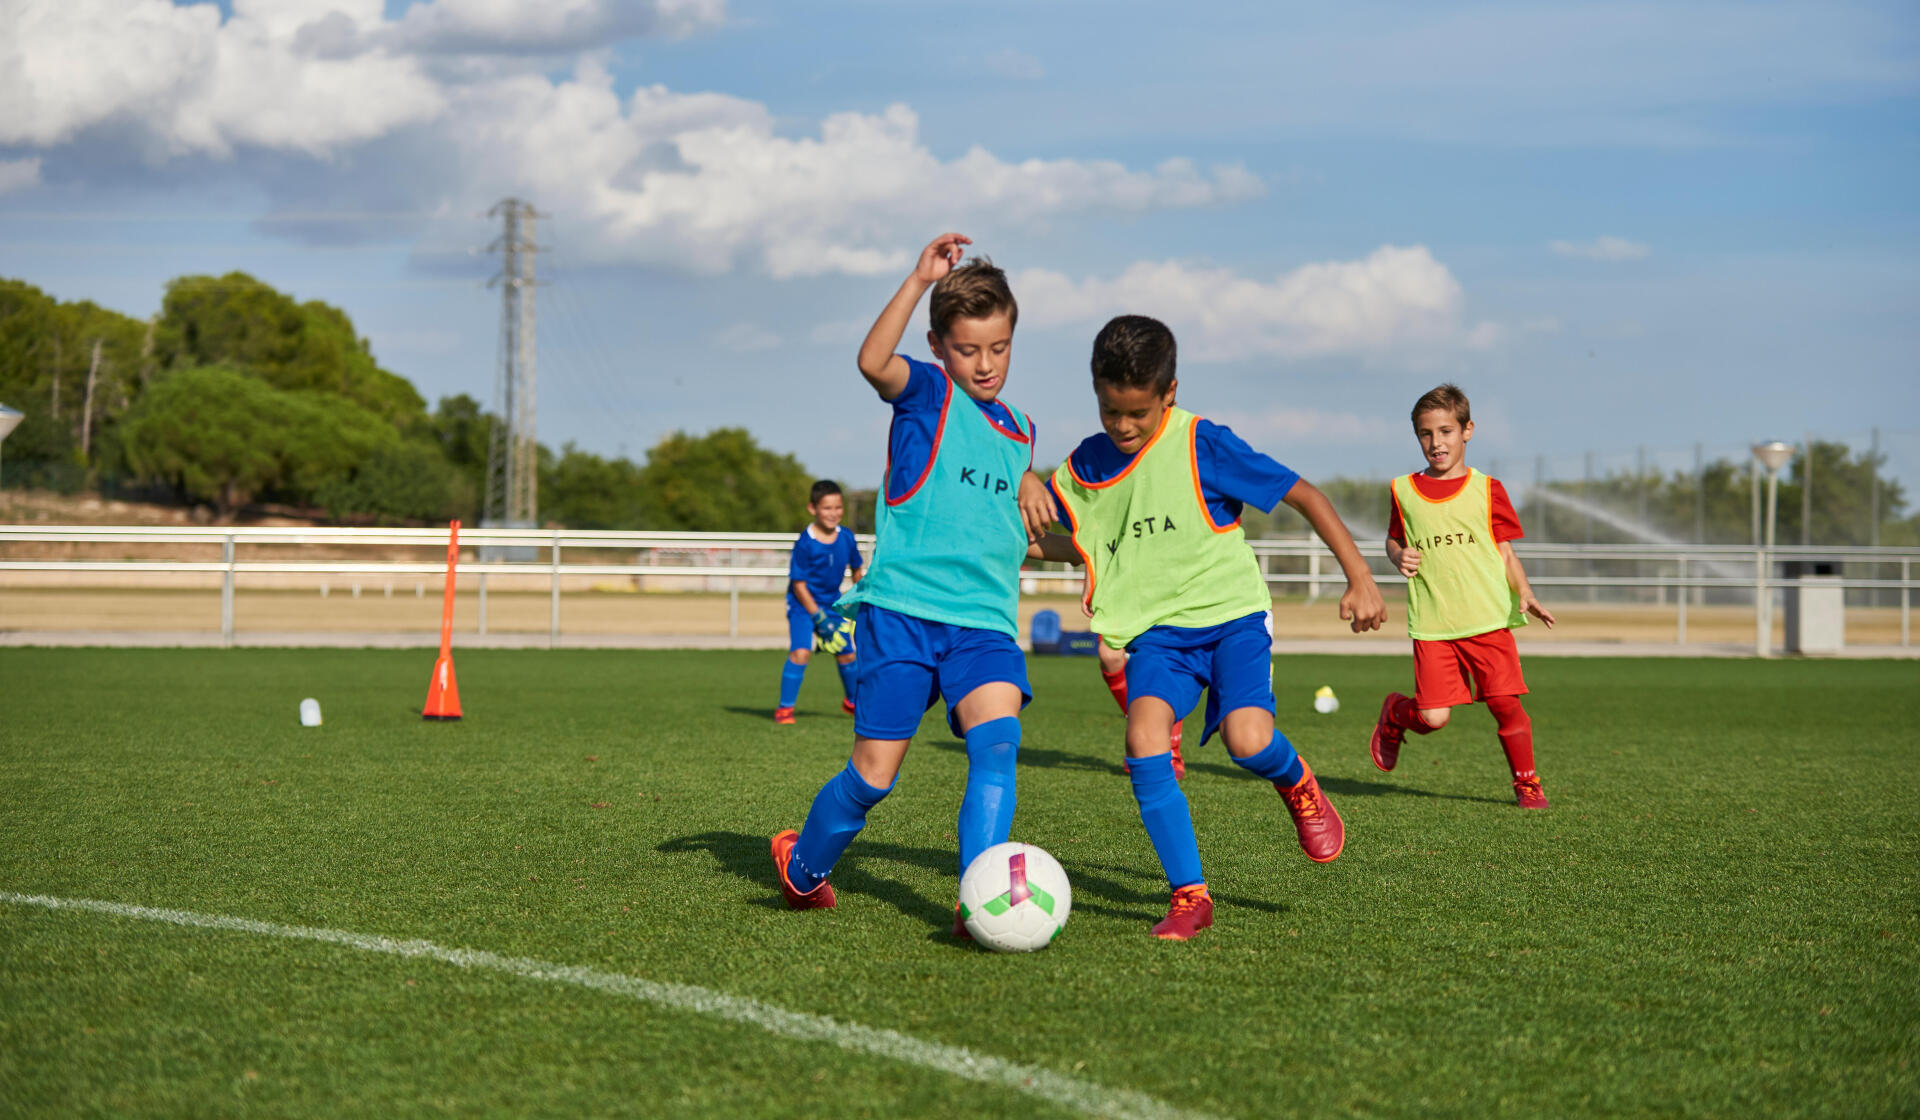 Fotbalul pentru copii: Ce beneficii oferă și cum alegi echipamentul potrivit